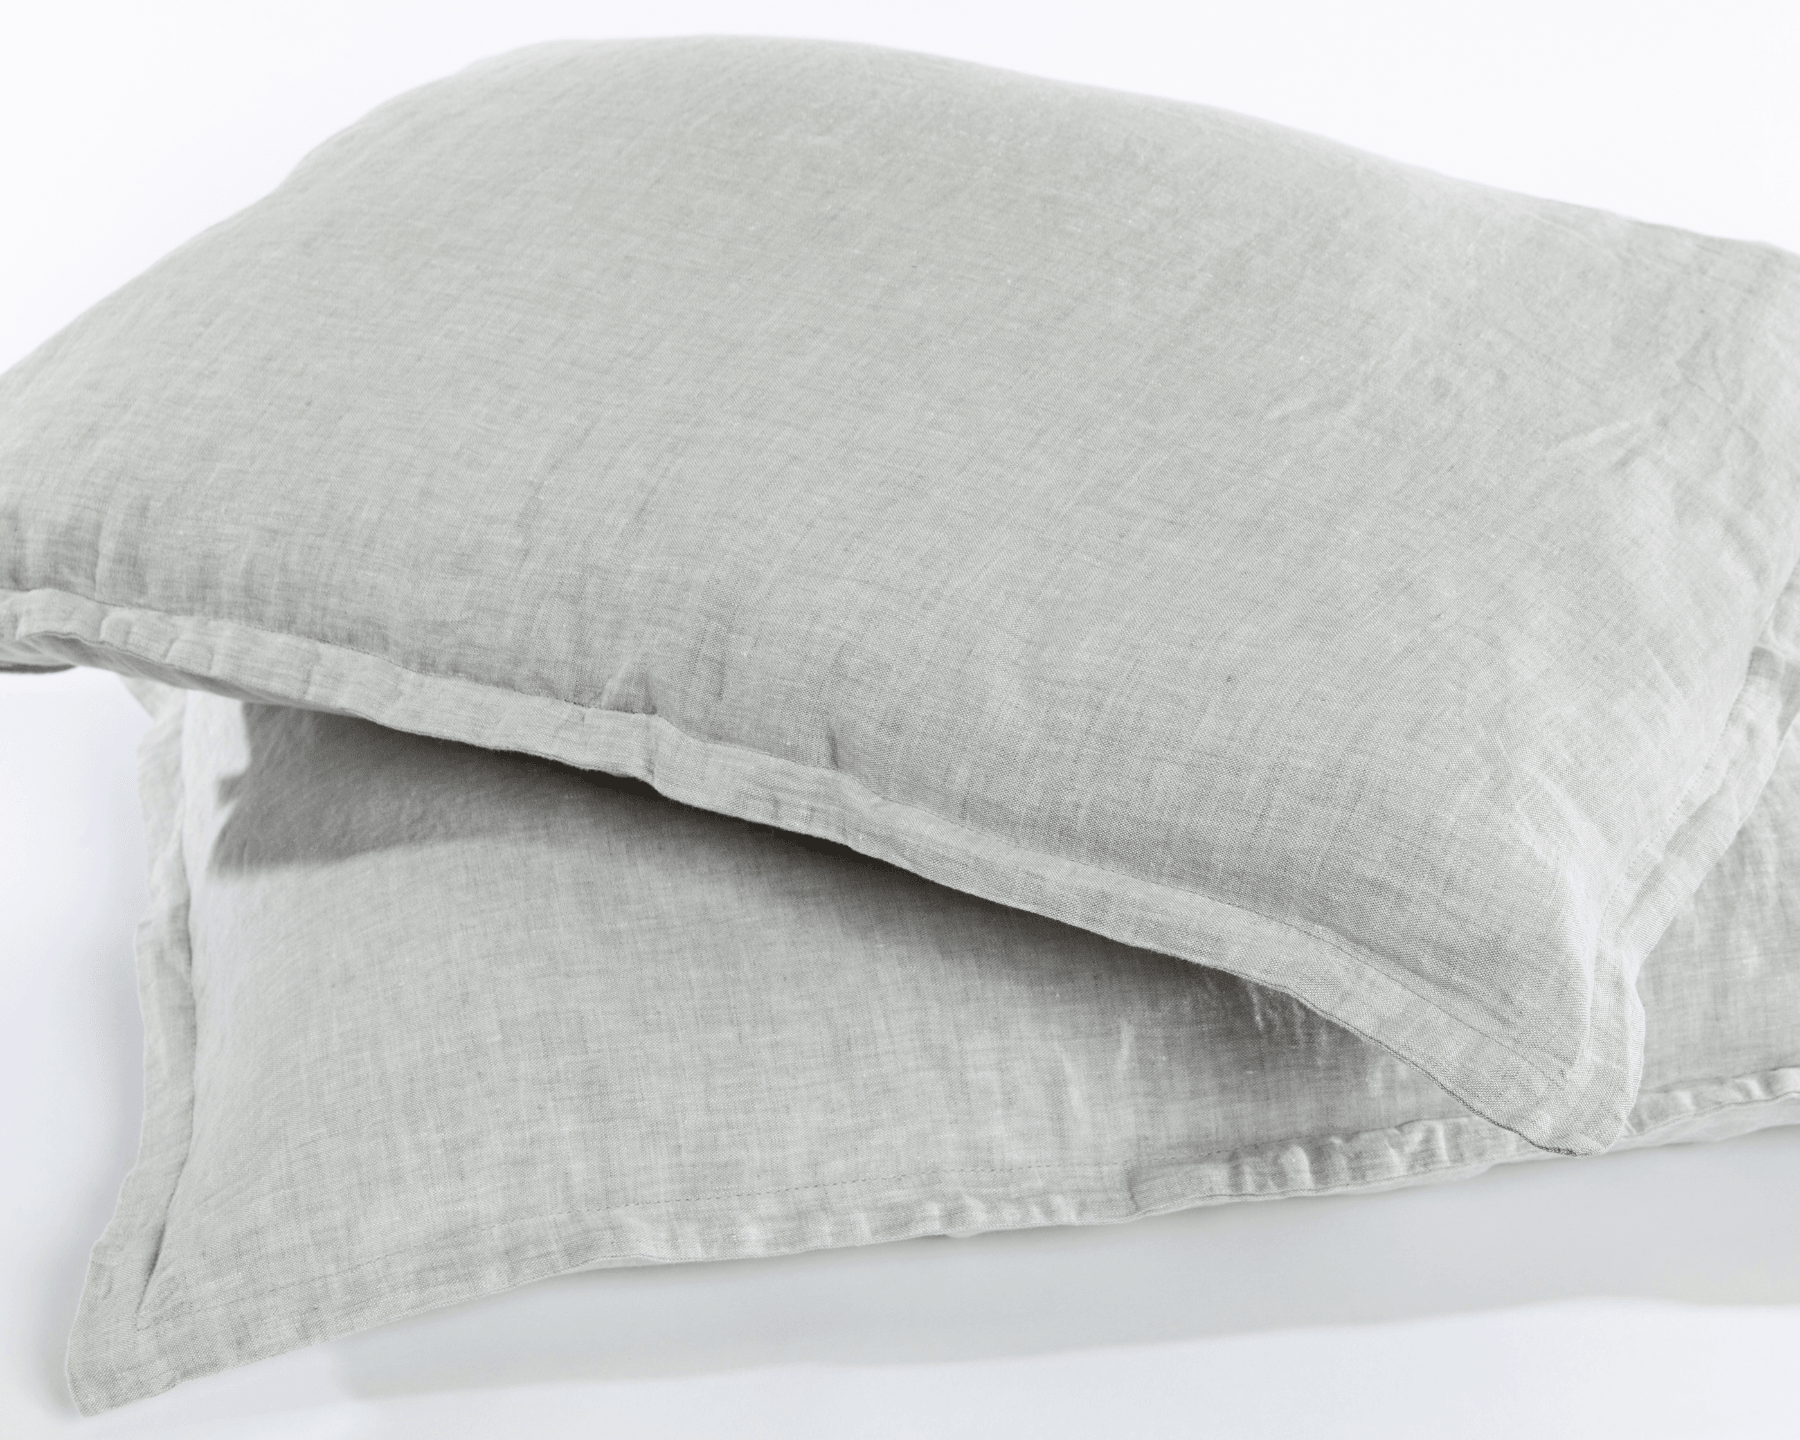 Chambray grey organic European linen pillowcases